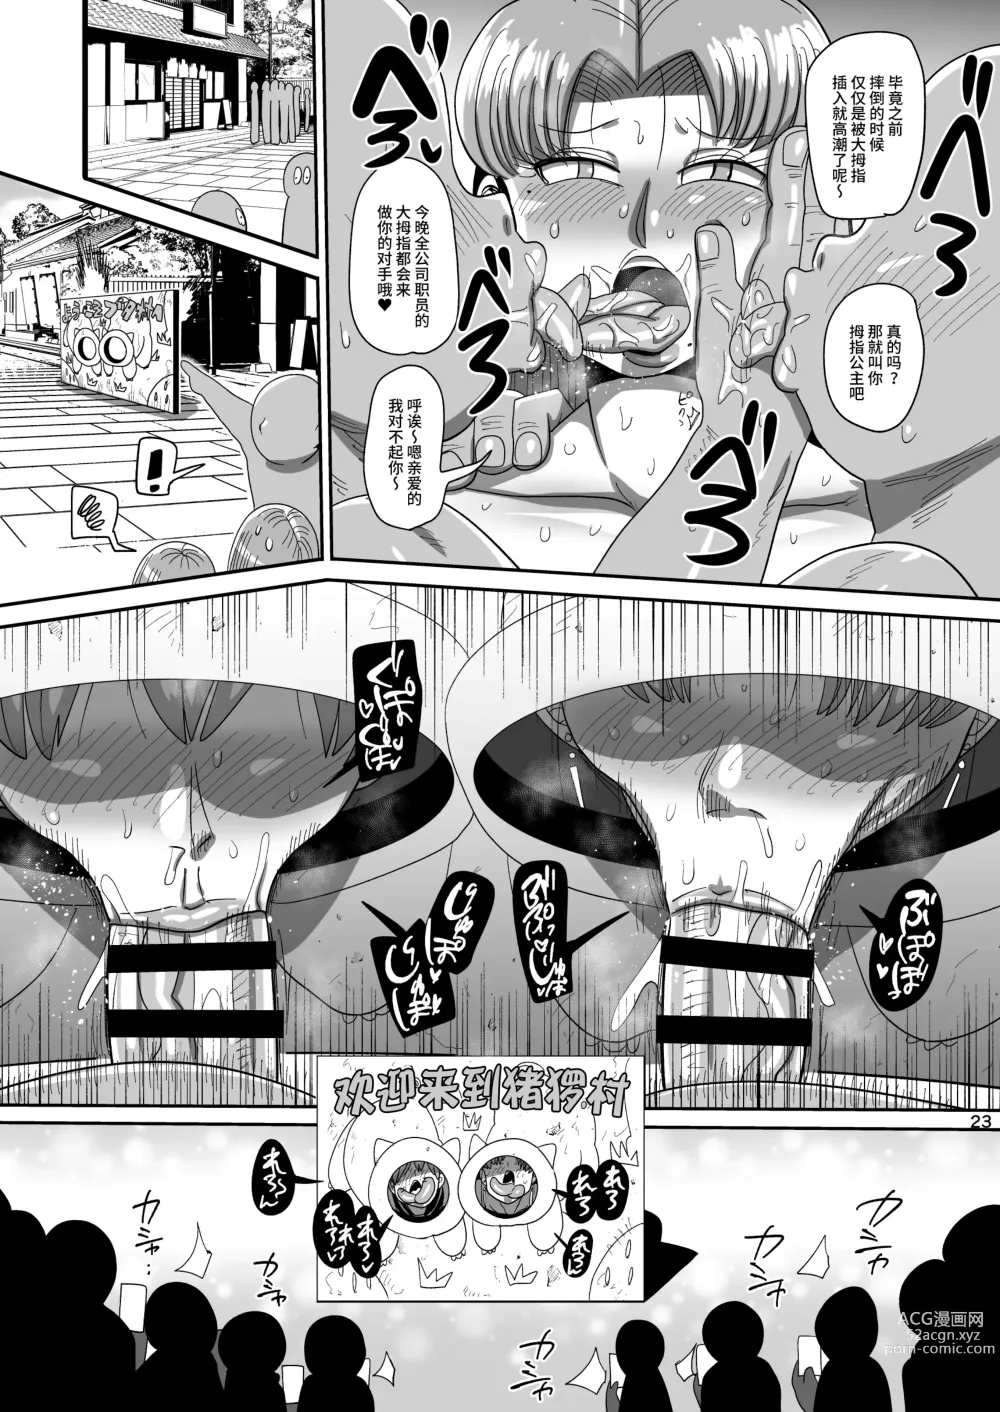 Page 22 of doujinshi Nandemo Chousa Mama Kuma Shizue ha TEIKO ga dekinai